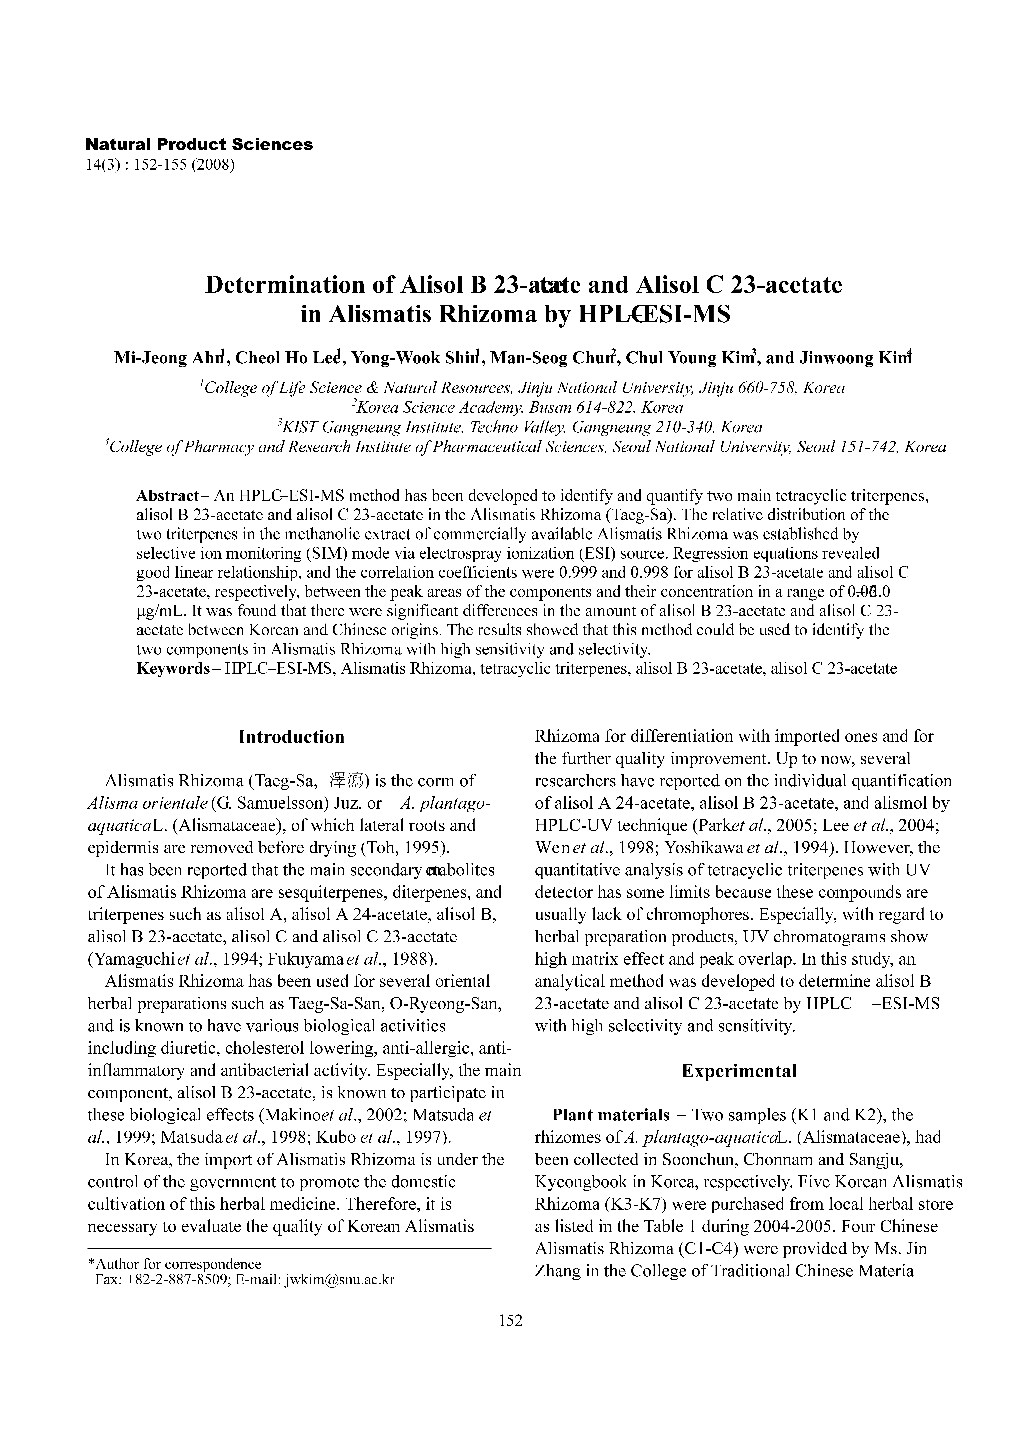 Determination of Alisol B 23-Acetate and Alisol C 23-Acetate in Alismatis Rhizoma by HPLC−ESI-MS